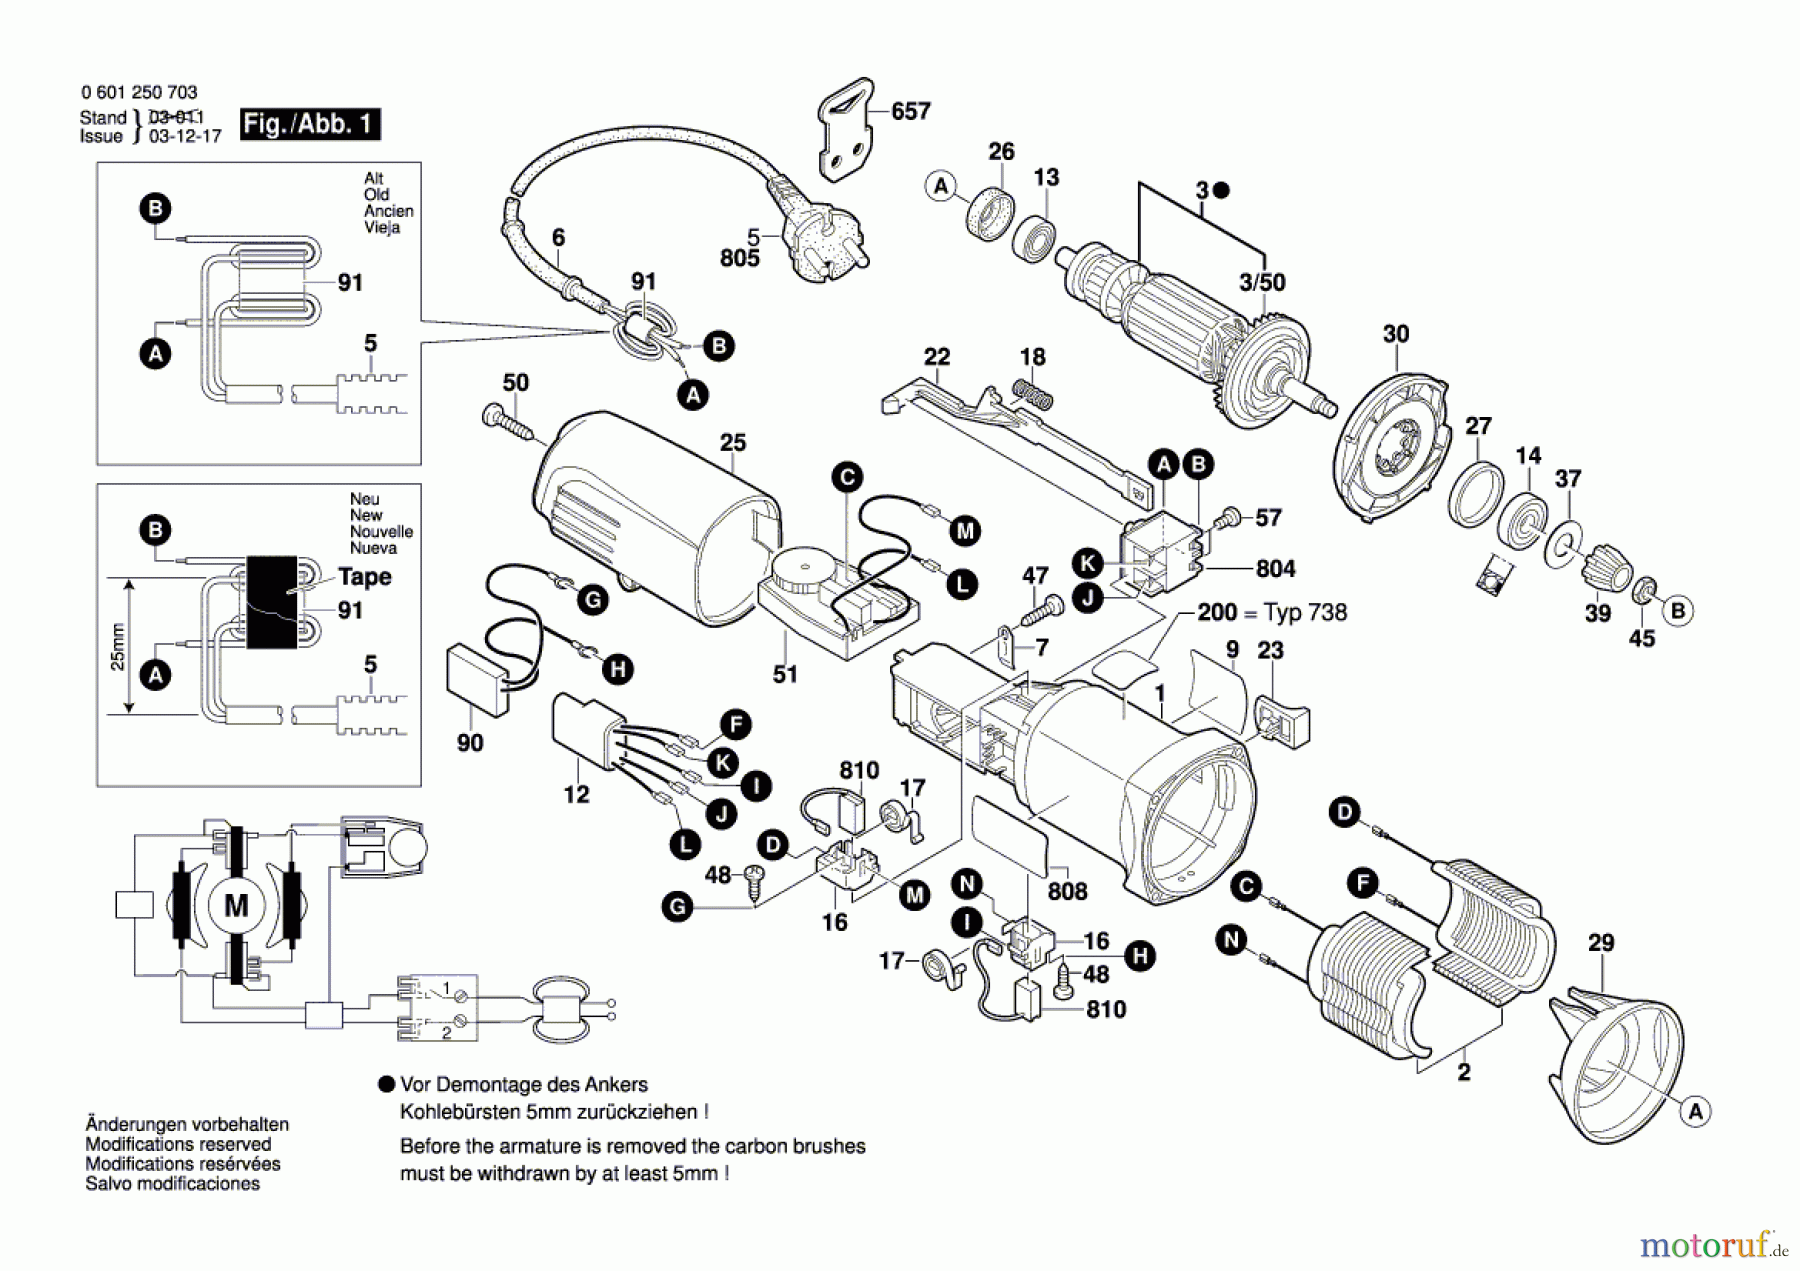  Bosch Werkzeug Exzenterschleifer GEX 150 TURBO Seite 1